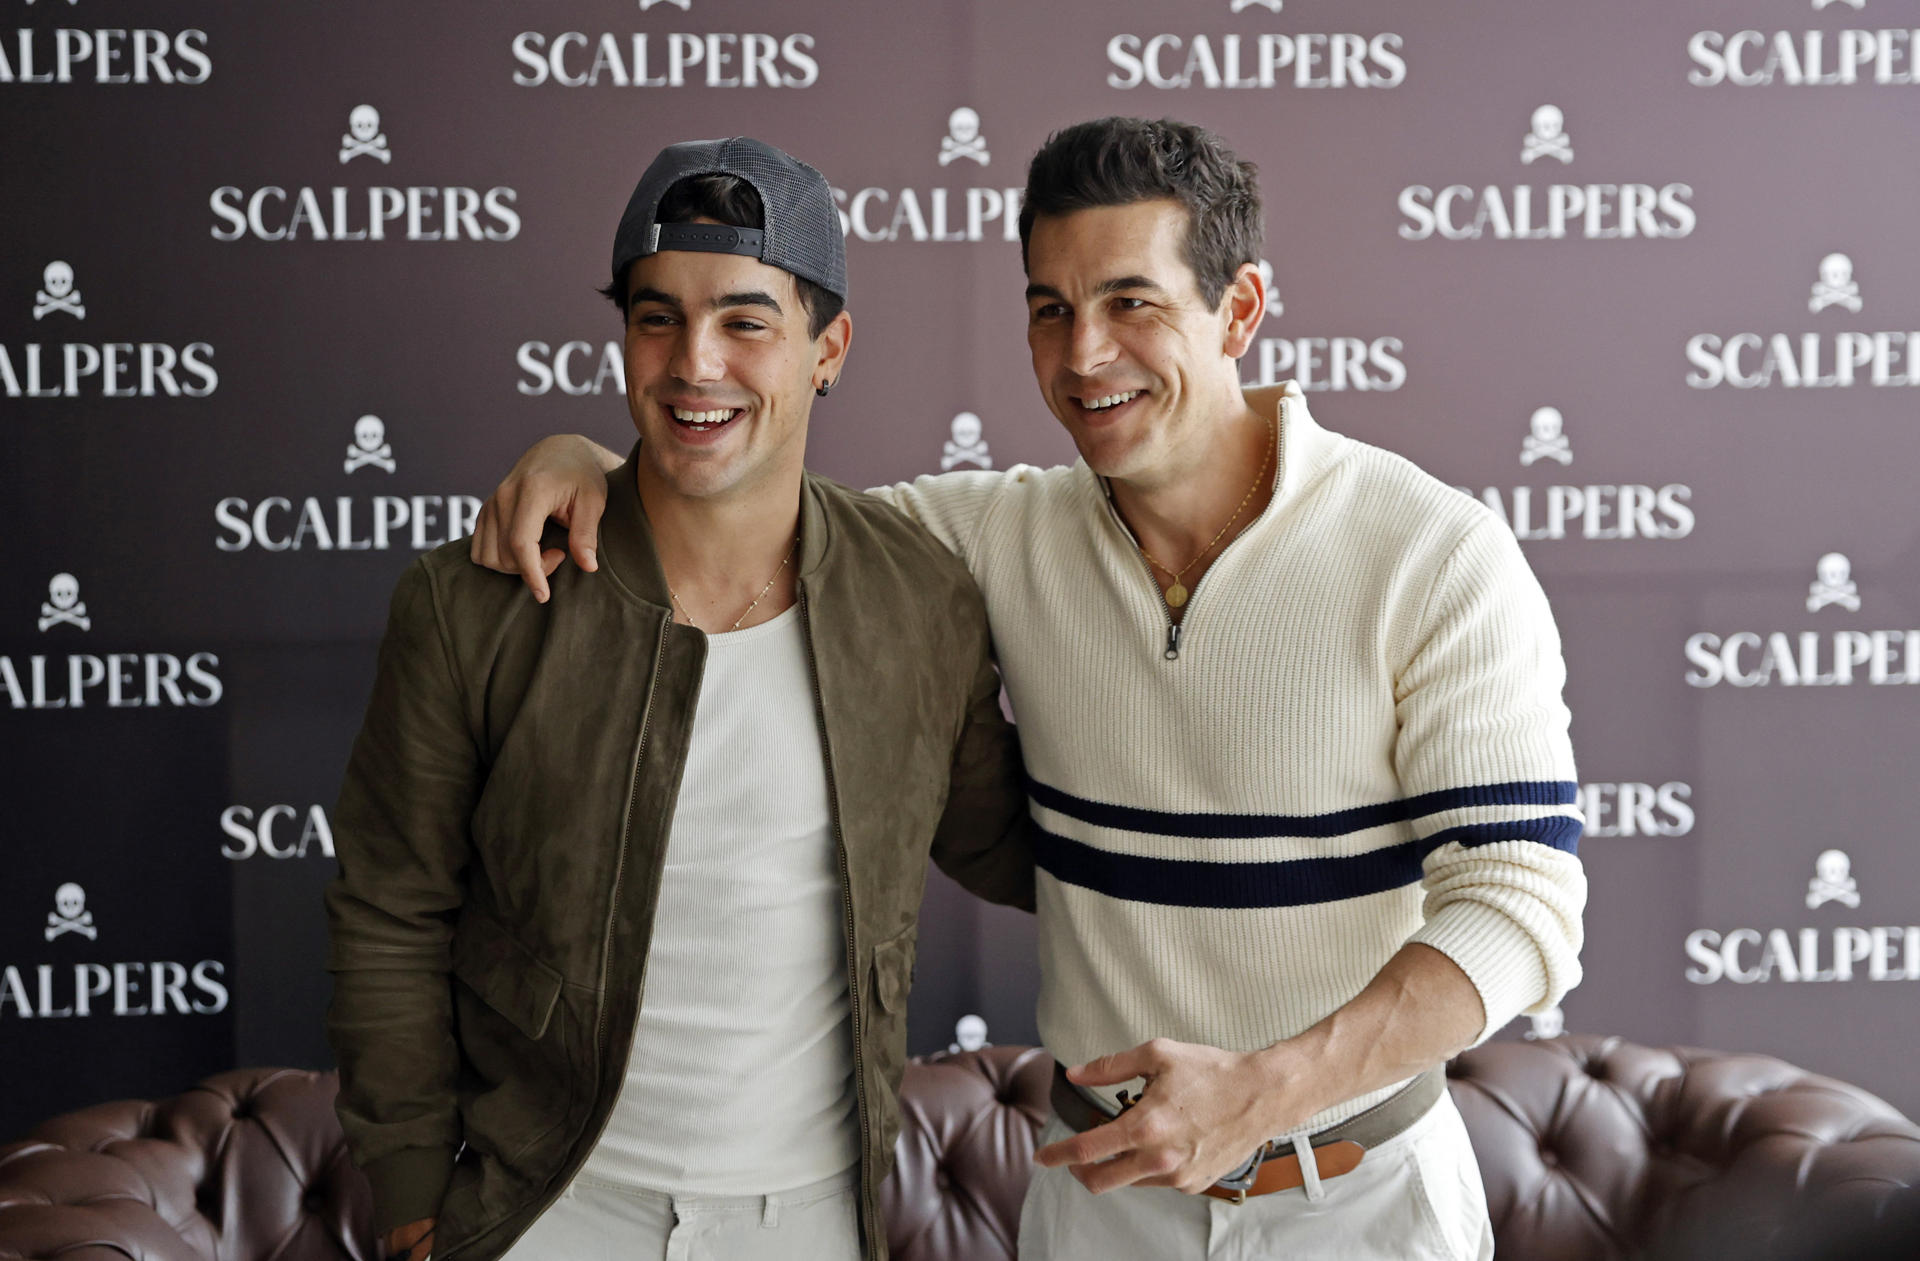 Los hermanos y actores españoles Óscar (i) y Mario Casas posan durante una rueda de prensa de la marca de moda masculina Scalpers este jueves, en Bogotá (Colombia). EFE/Mauricio Dueñas Castañeda